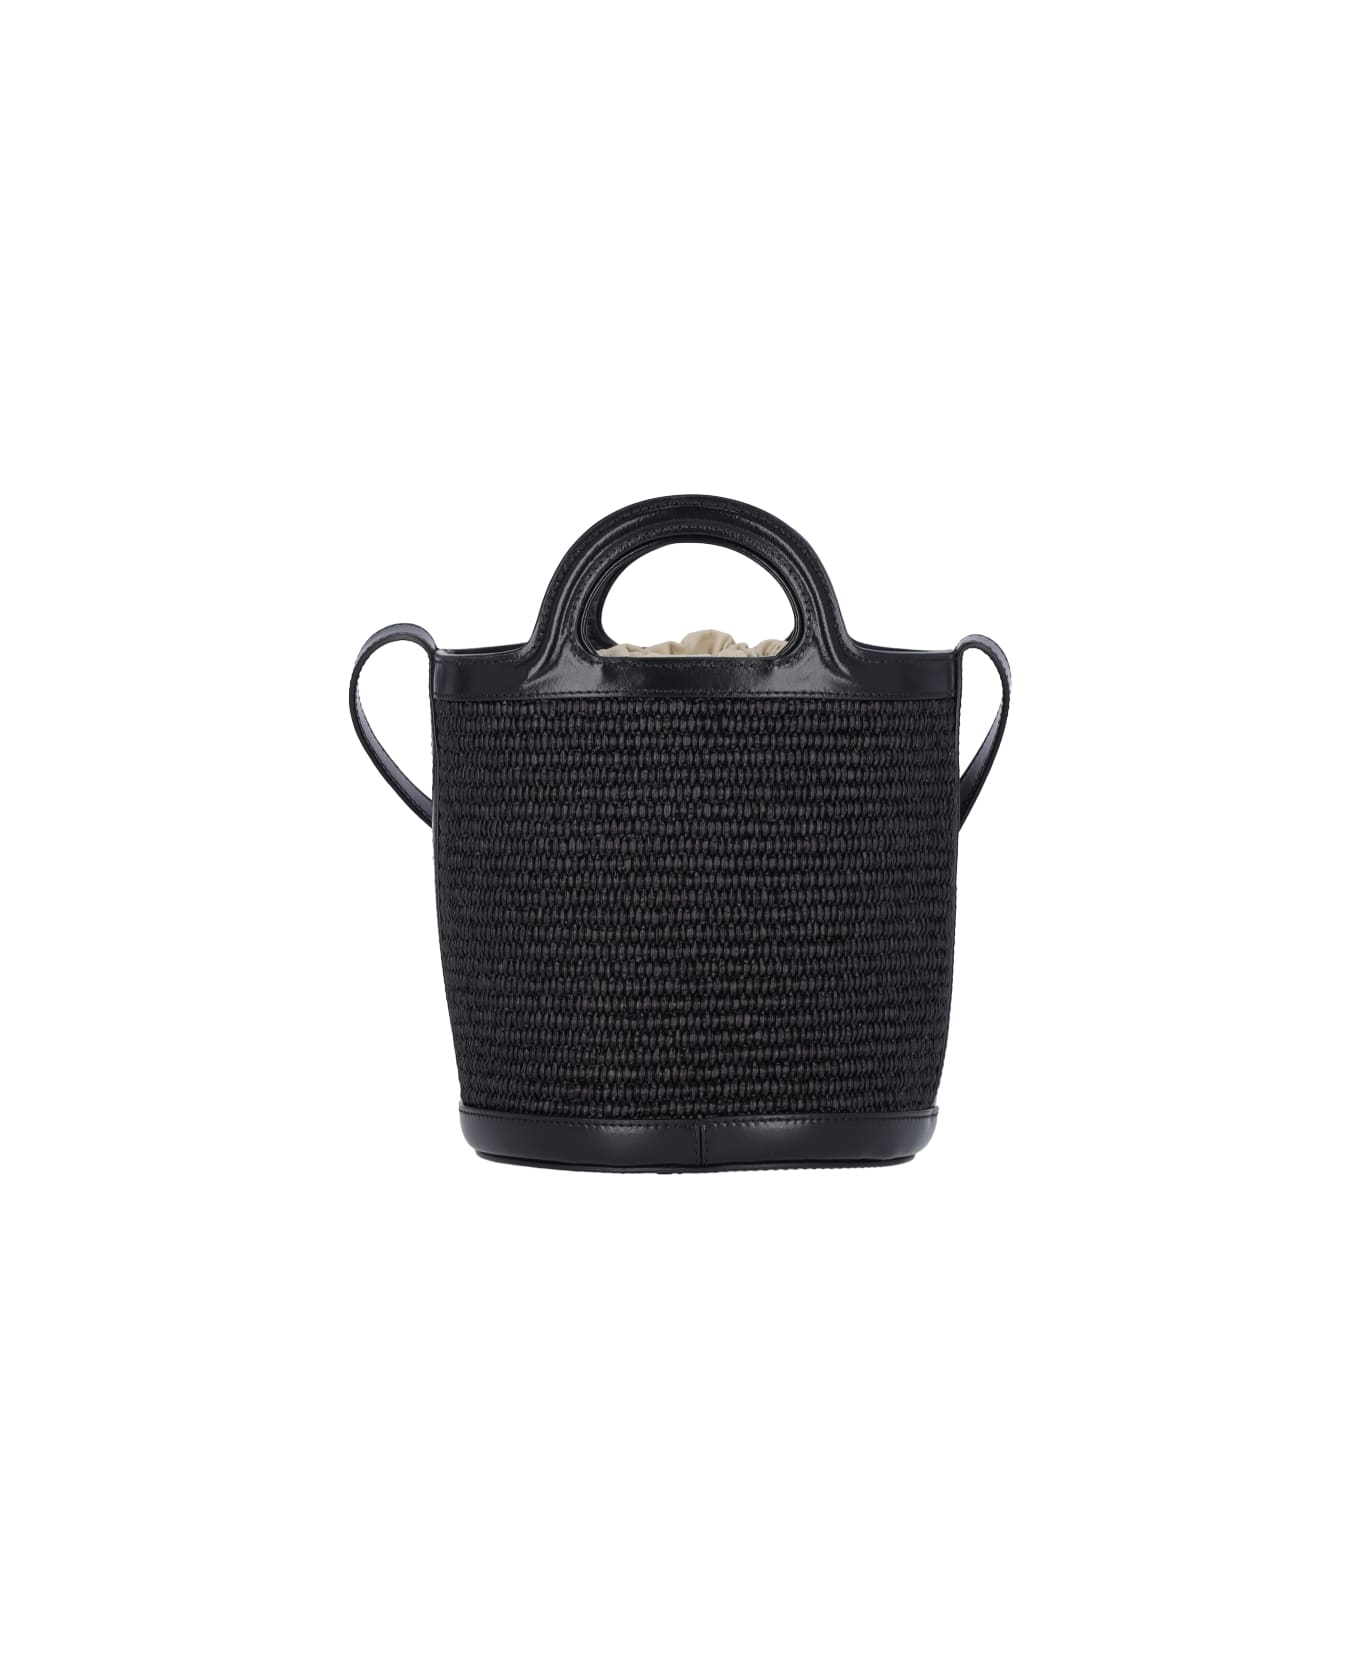 Marni Small Bucket Bag "tropicalia" - Black  